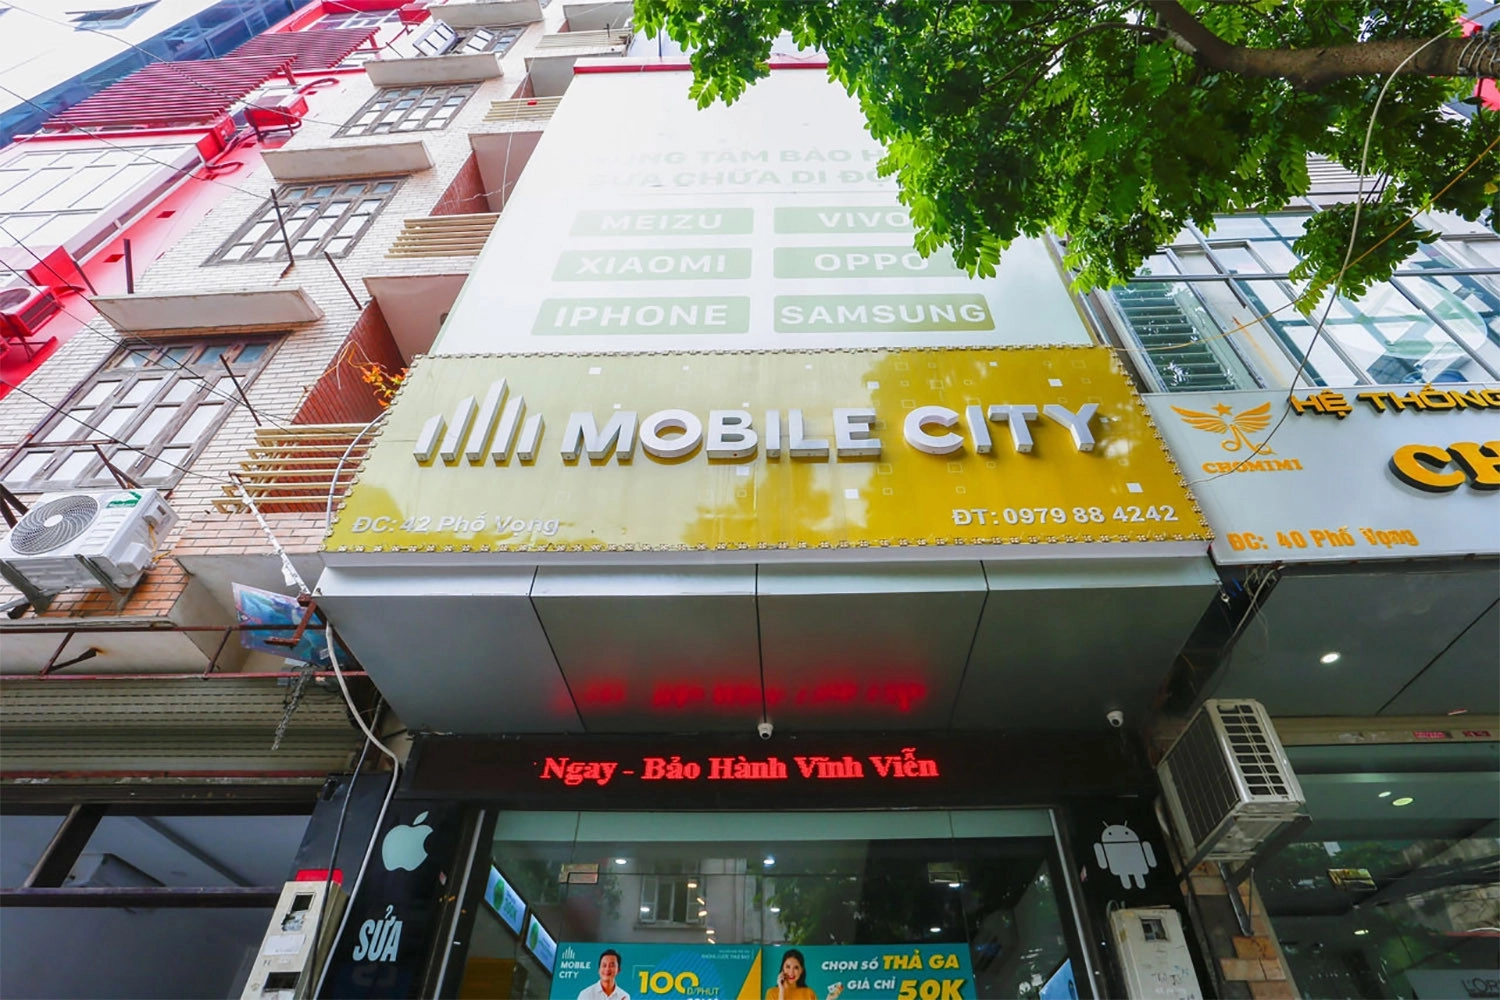 Địa chỉ thay màn hình điện thoại Vivo Y33s tại MobileCity